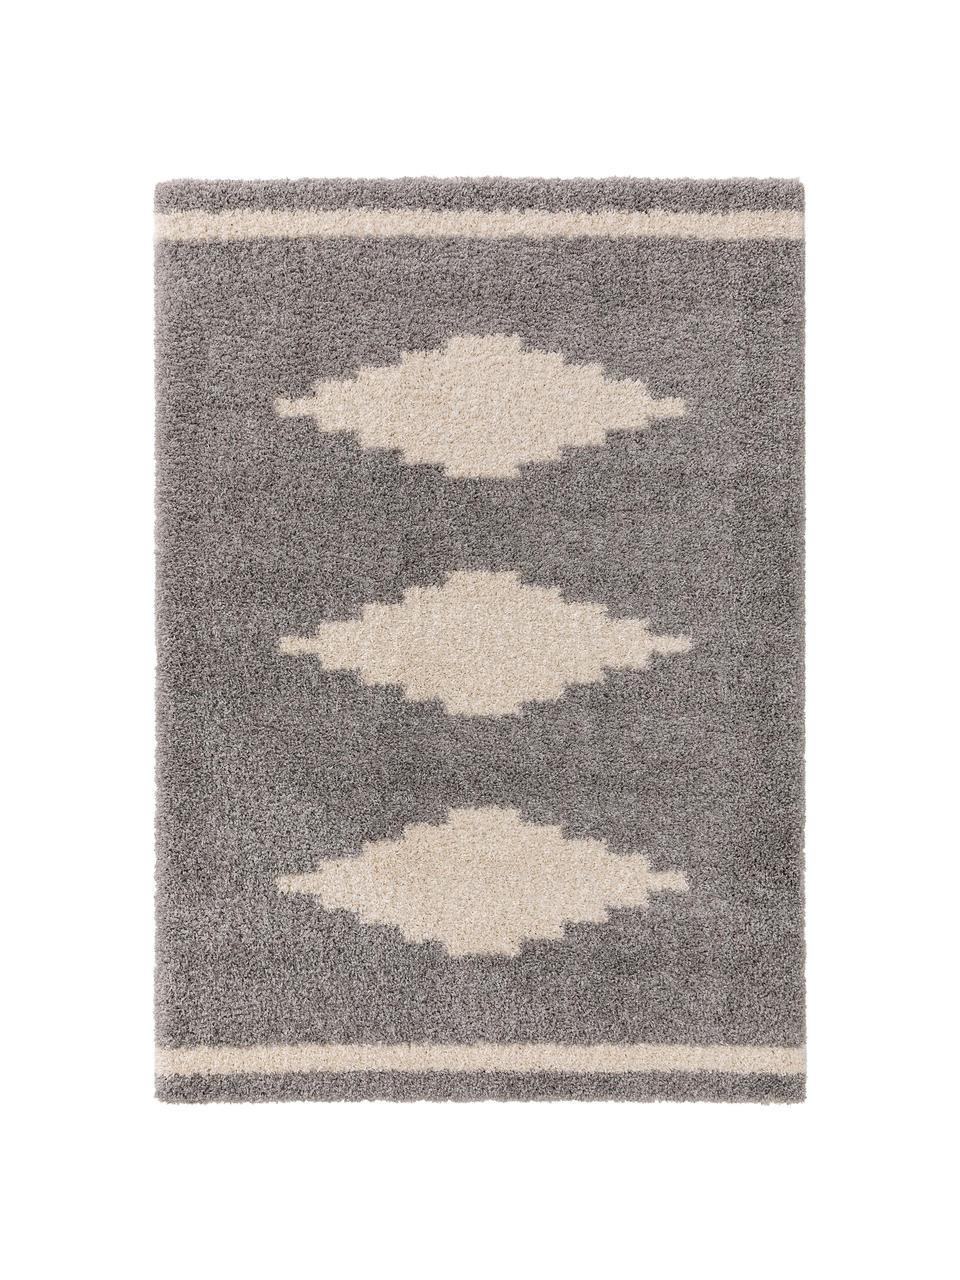 Hochflor-Teppich Selma mit grafischem Muster, 100% Polypropylen, Grau, Hellbeige, B 200 x L 290 cm (Größe L)